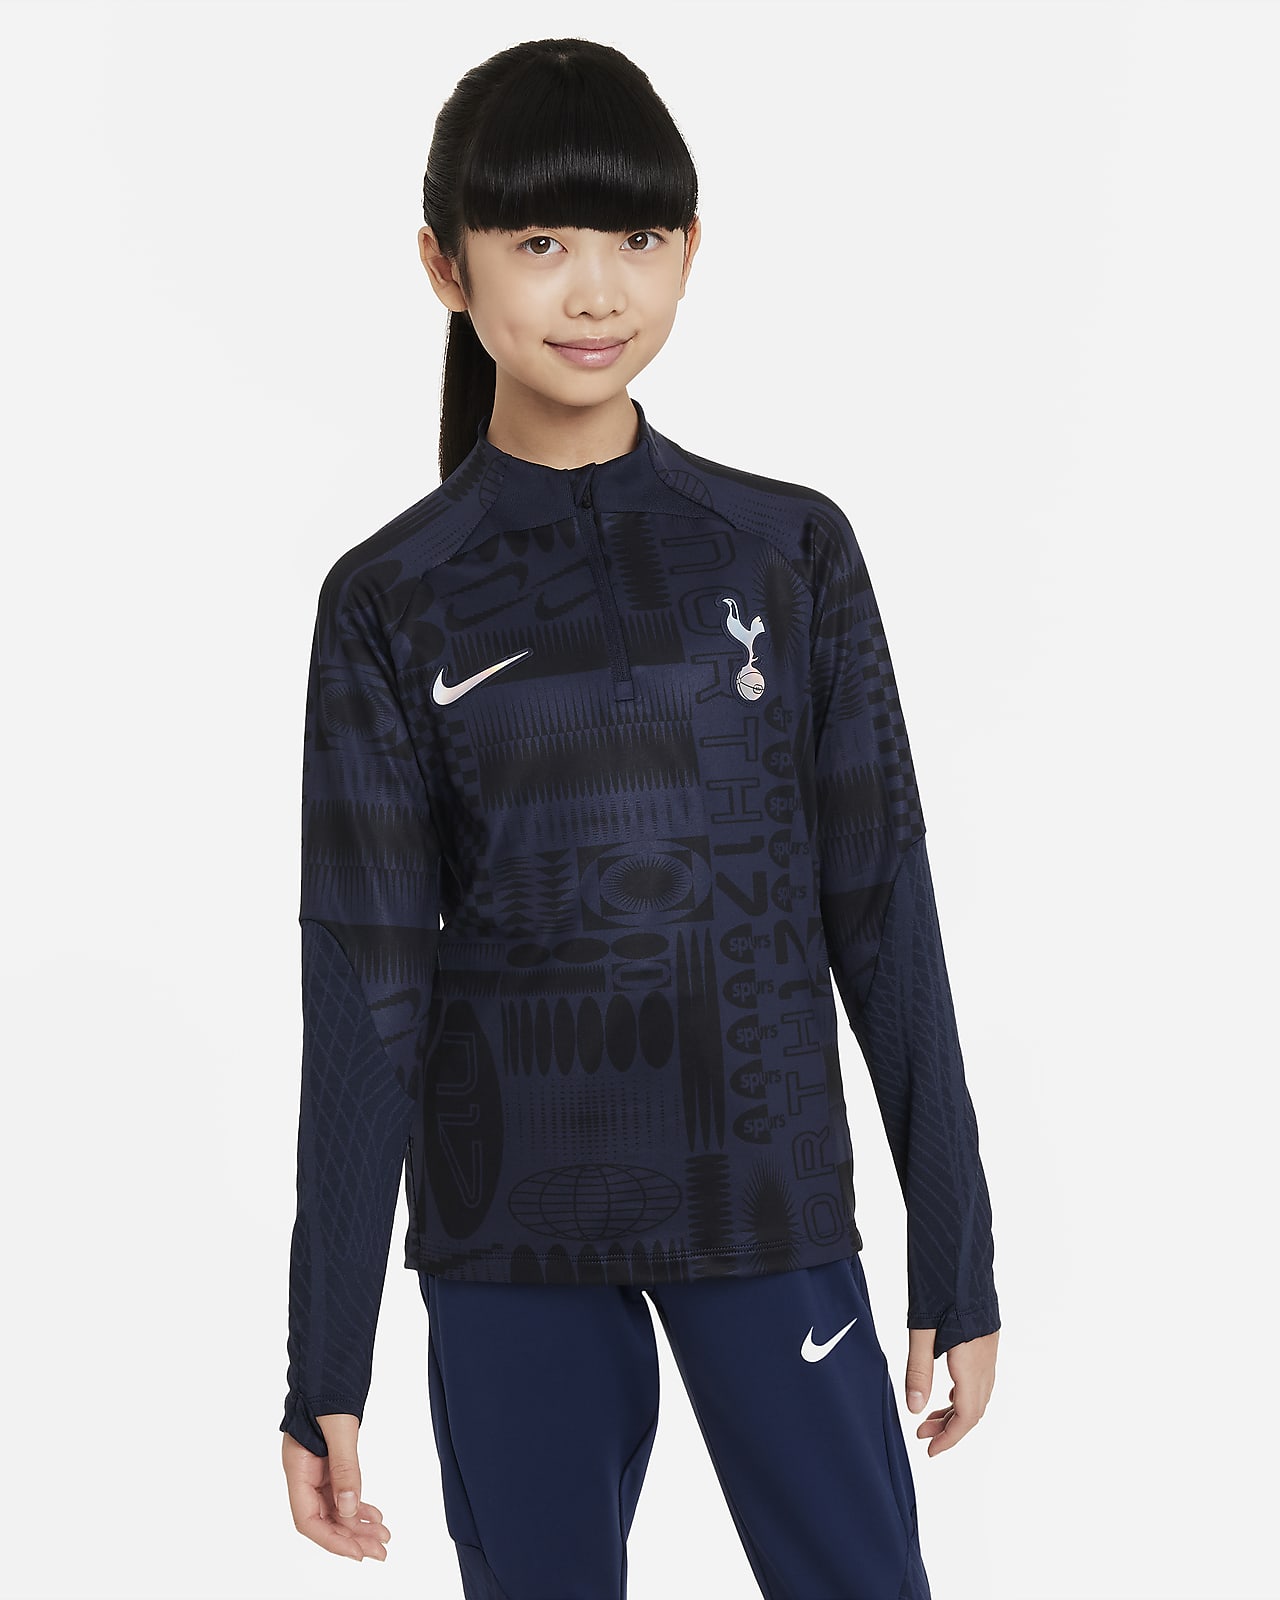 Ποδοσφαιρική μπλούζα προπόνησης Nike Dri-FIT Τότεναμ Strike για μεγάλα παιδιά